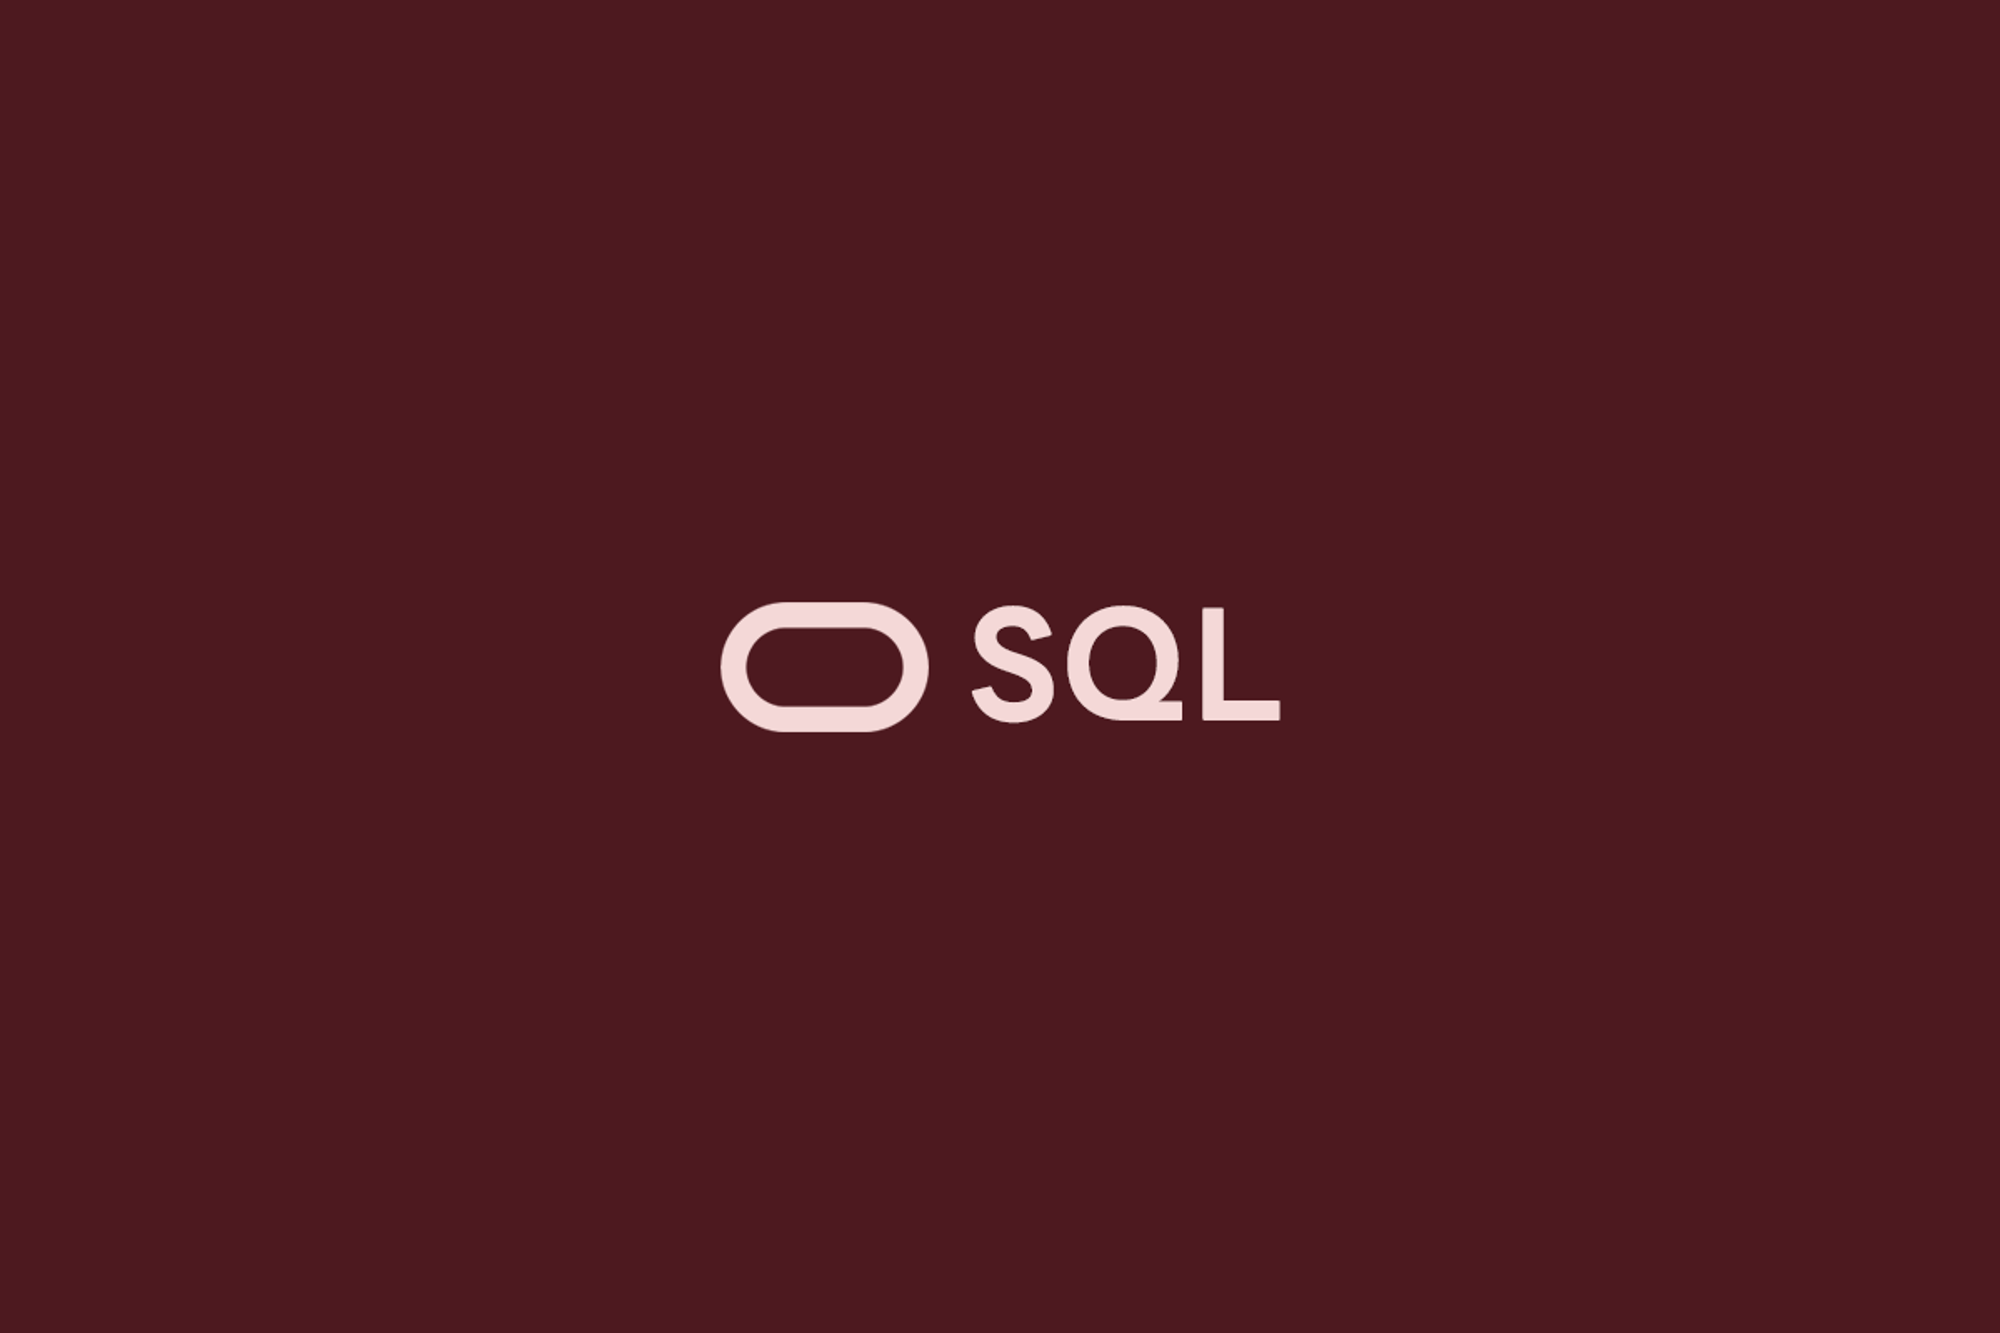 오라클 SQL (2) - 부속질의(Subquery)와 집합연산